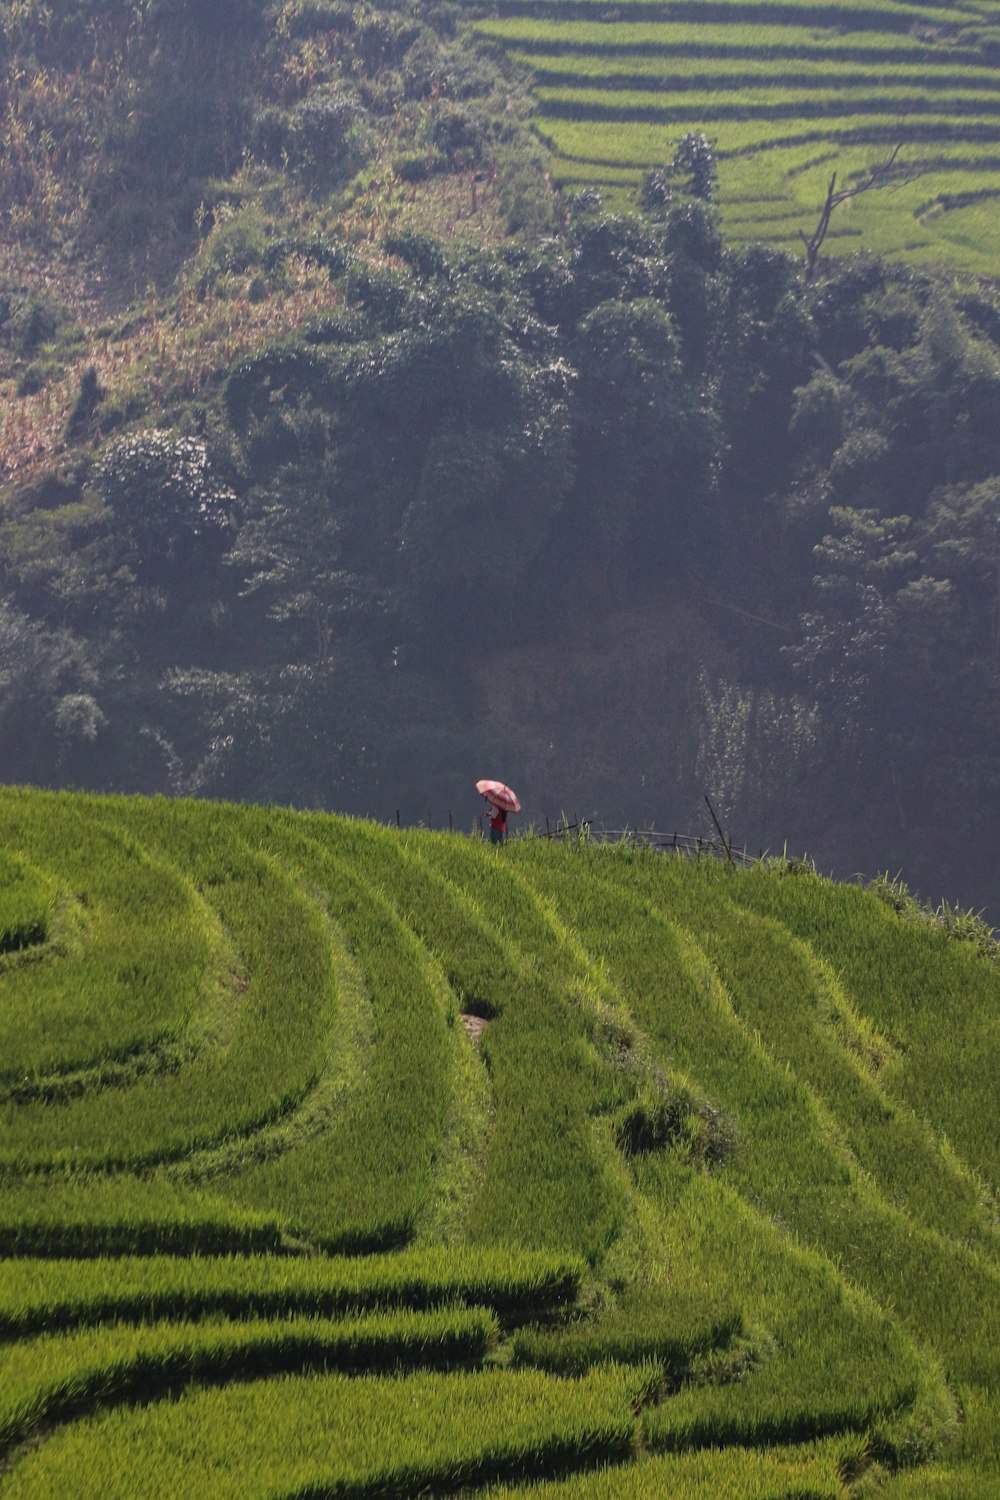 Una persona parada en la cima de una exuberante ladera verde